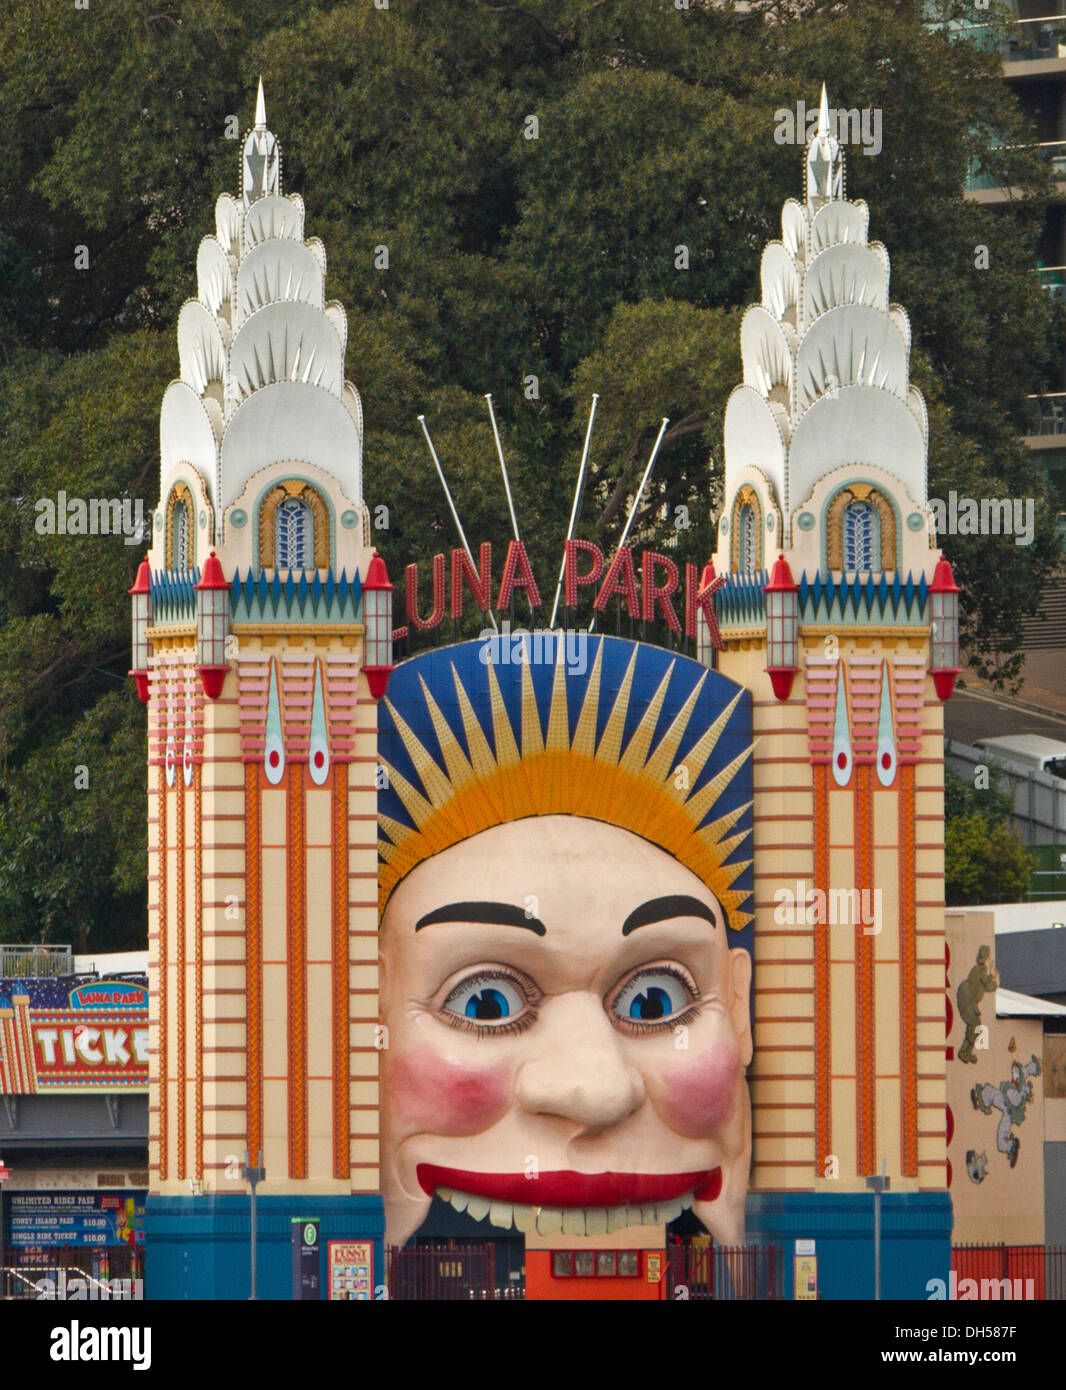 Kultige bemaltem Gesicht und Säulen am Eingang zum Luna Park Vergnügungspark neben Hafen in Sydney NSW, Australien Stockfoto